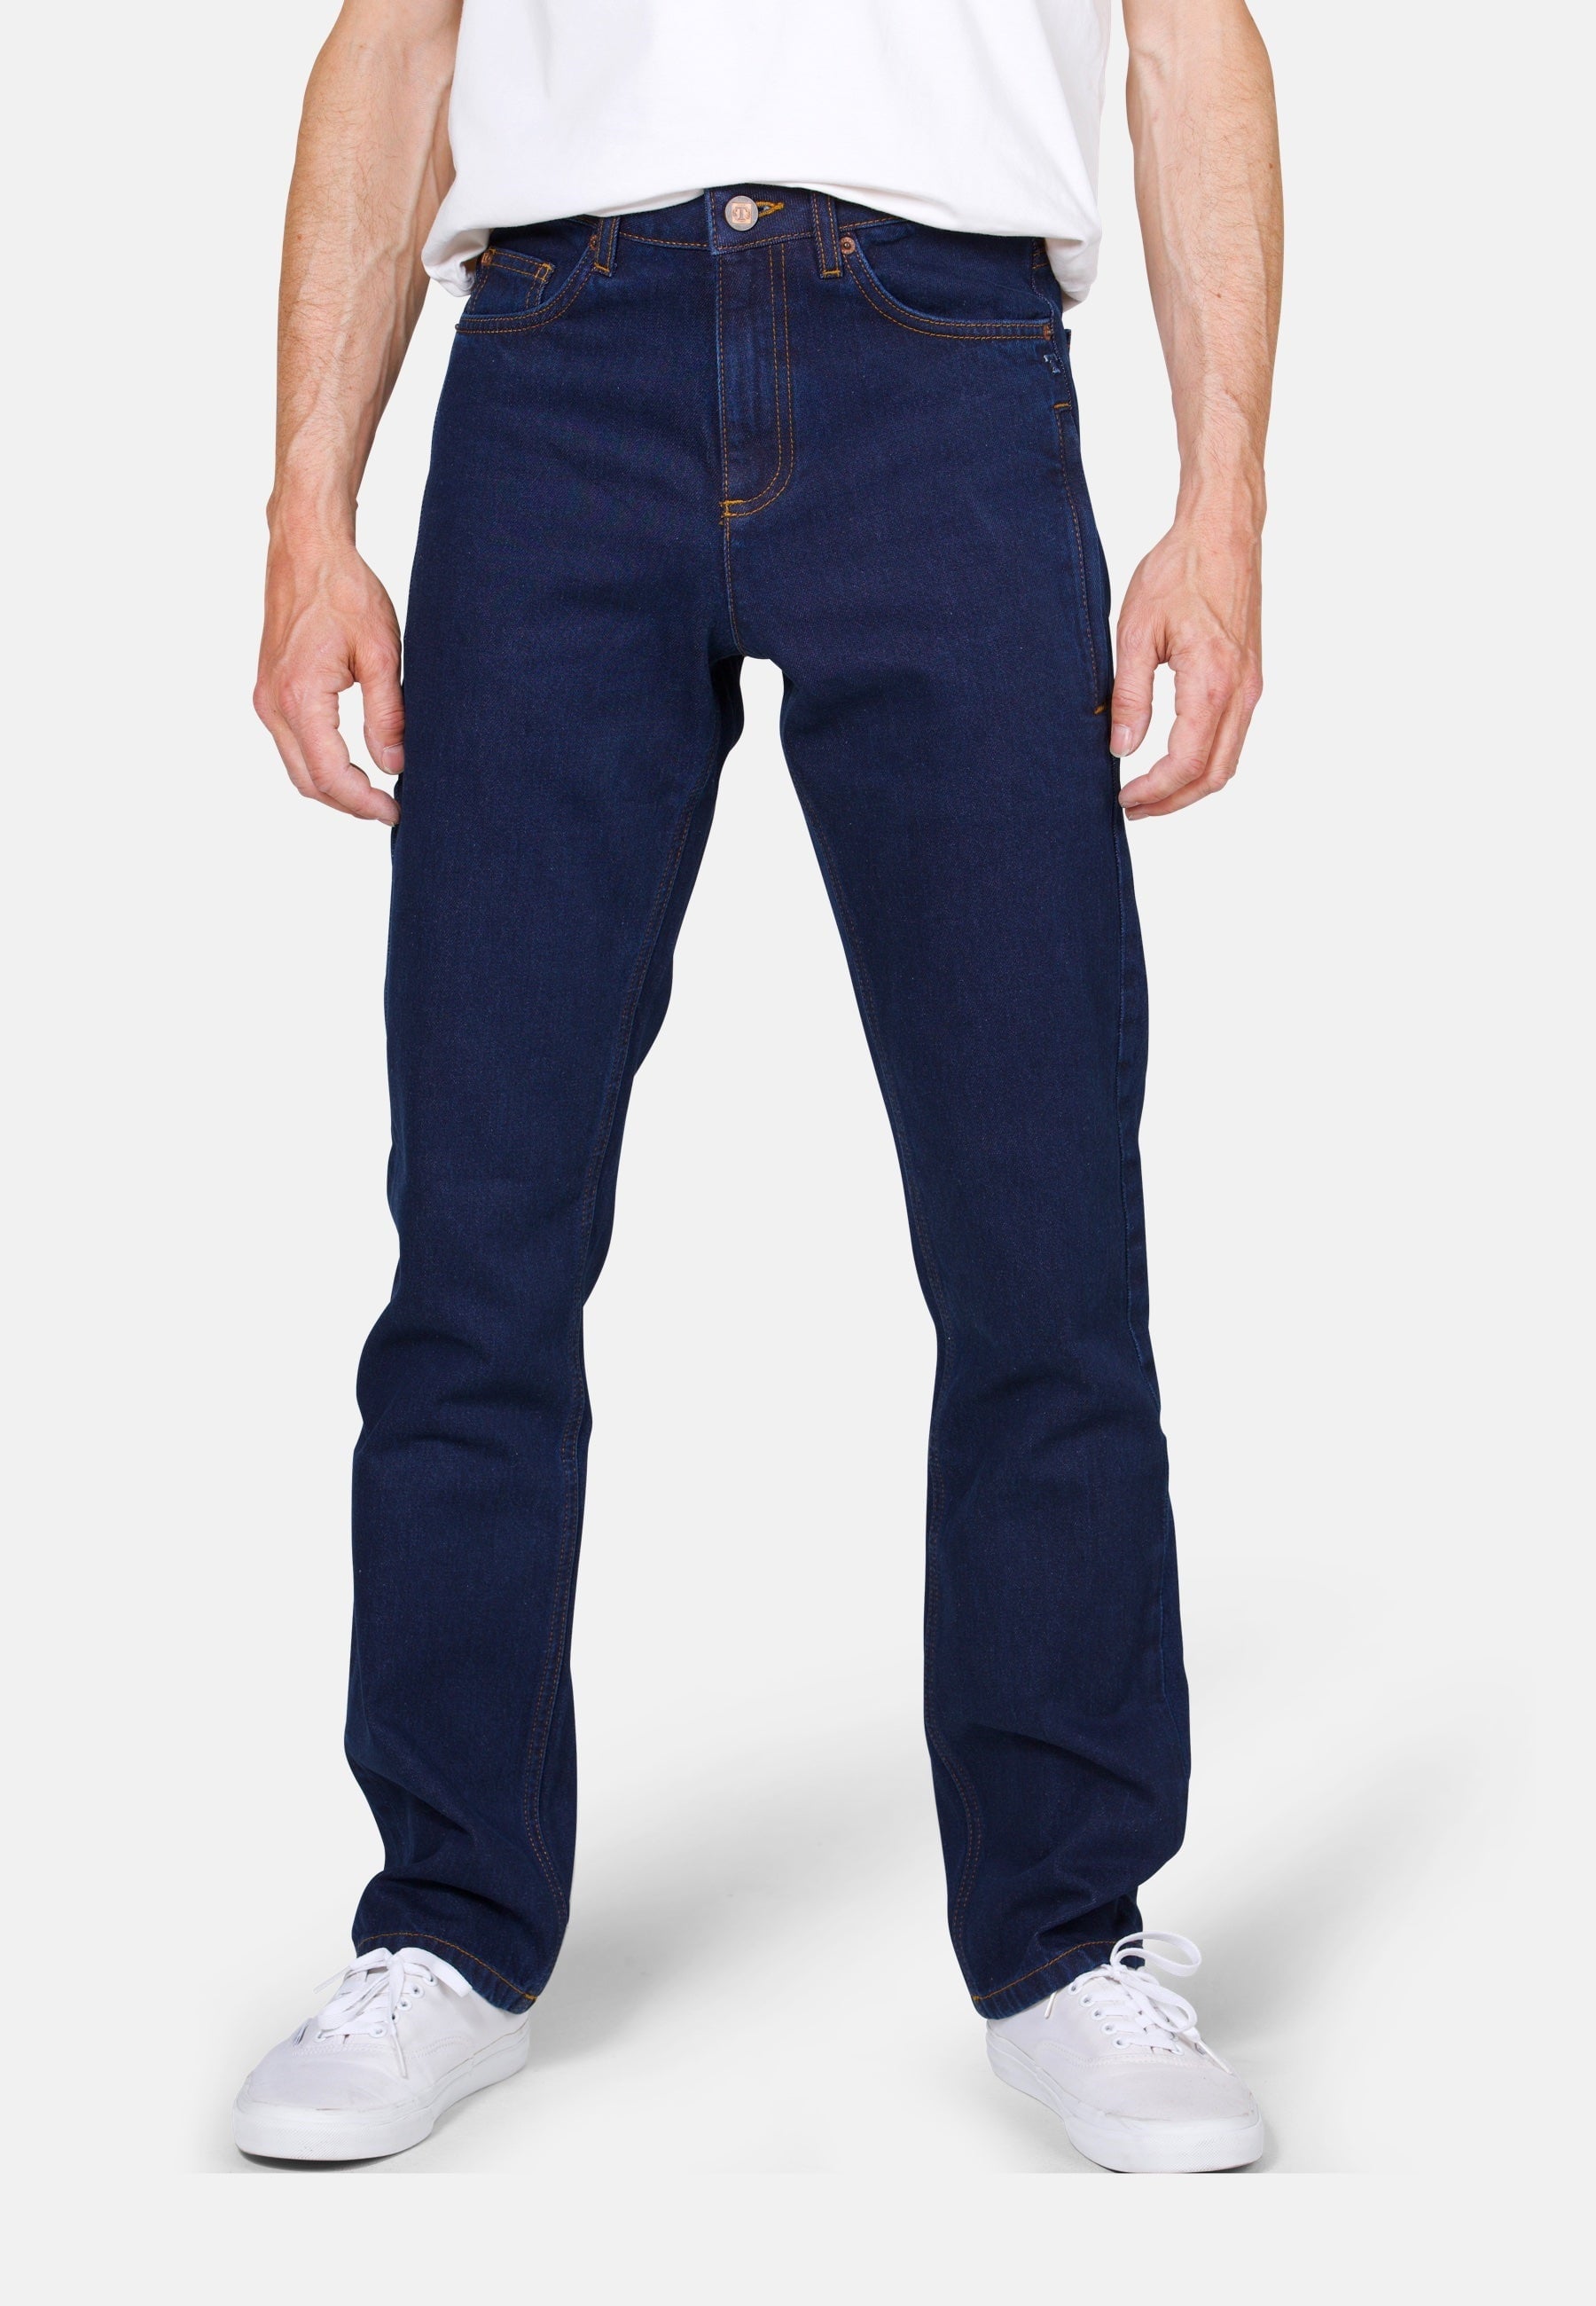 Straight Fit - Dark Wash Herren-Jeans Modell "LUCA" - TORLAND